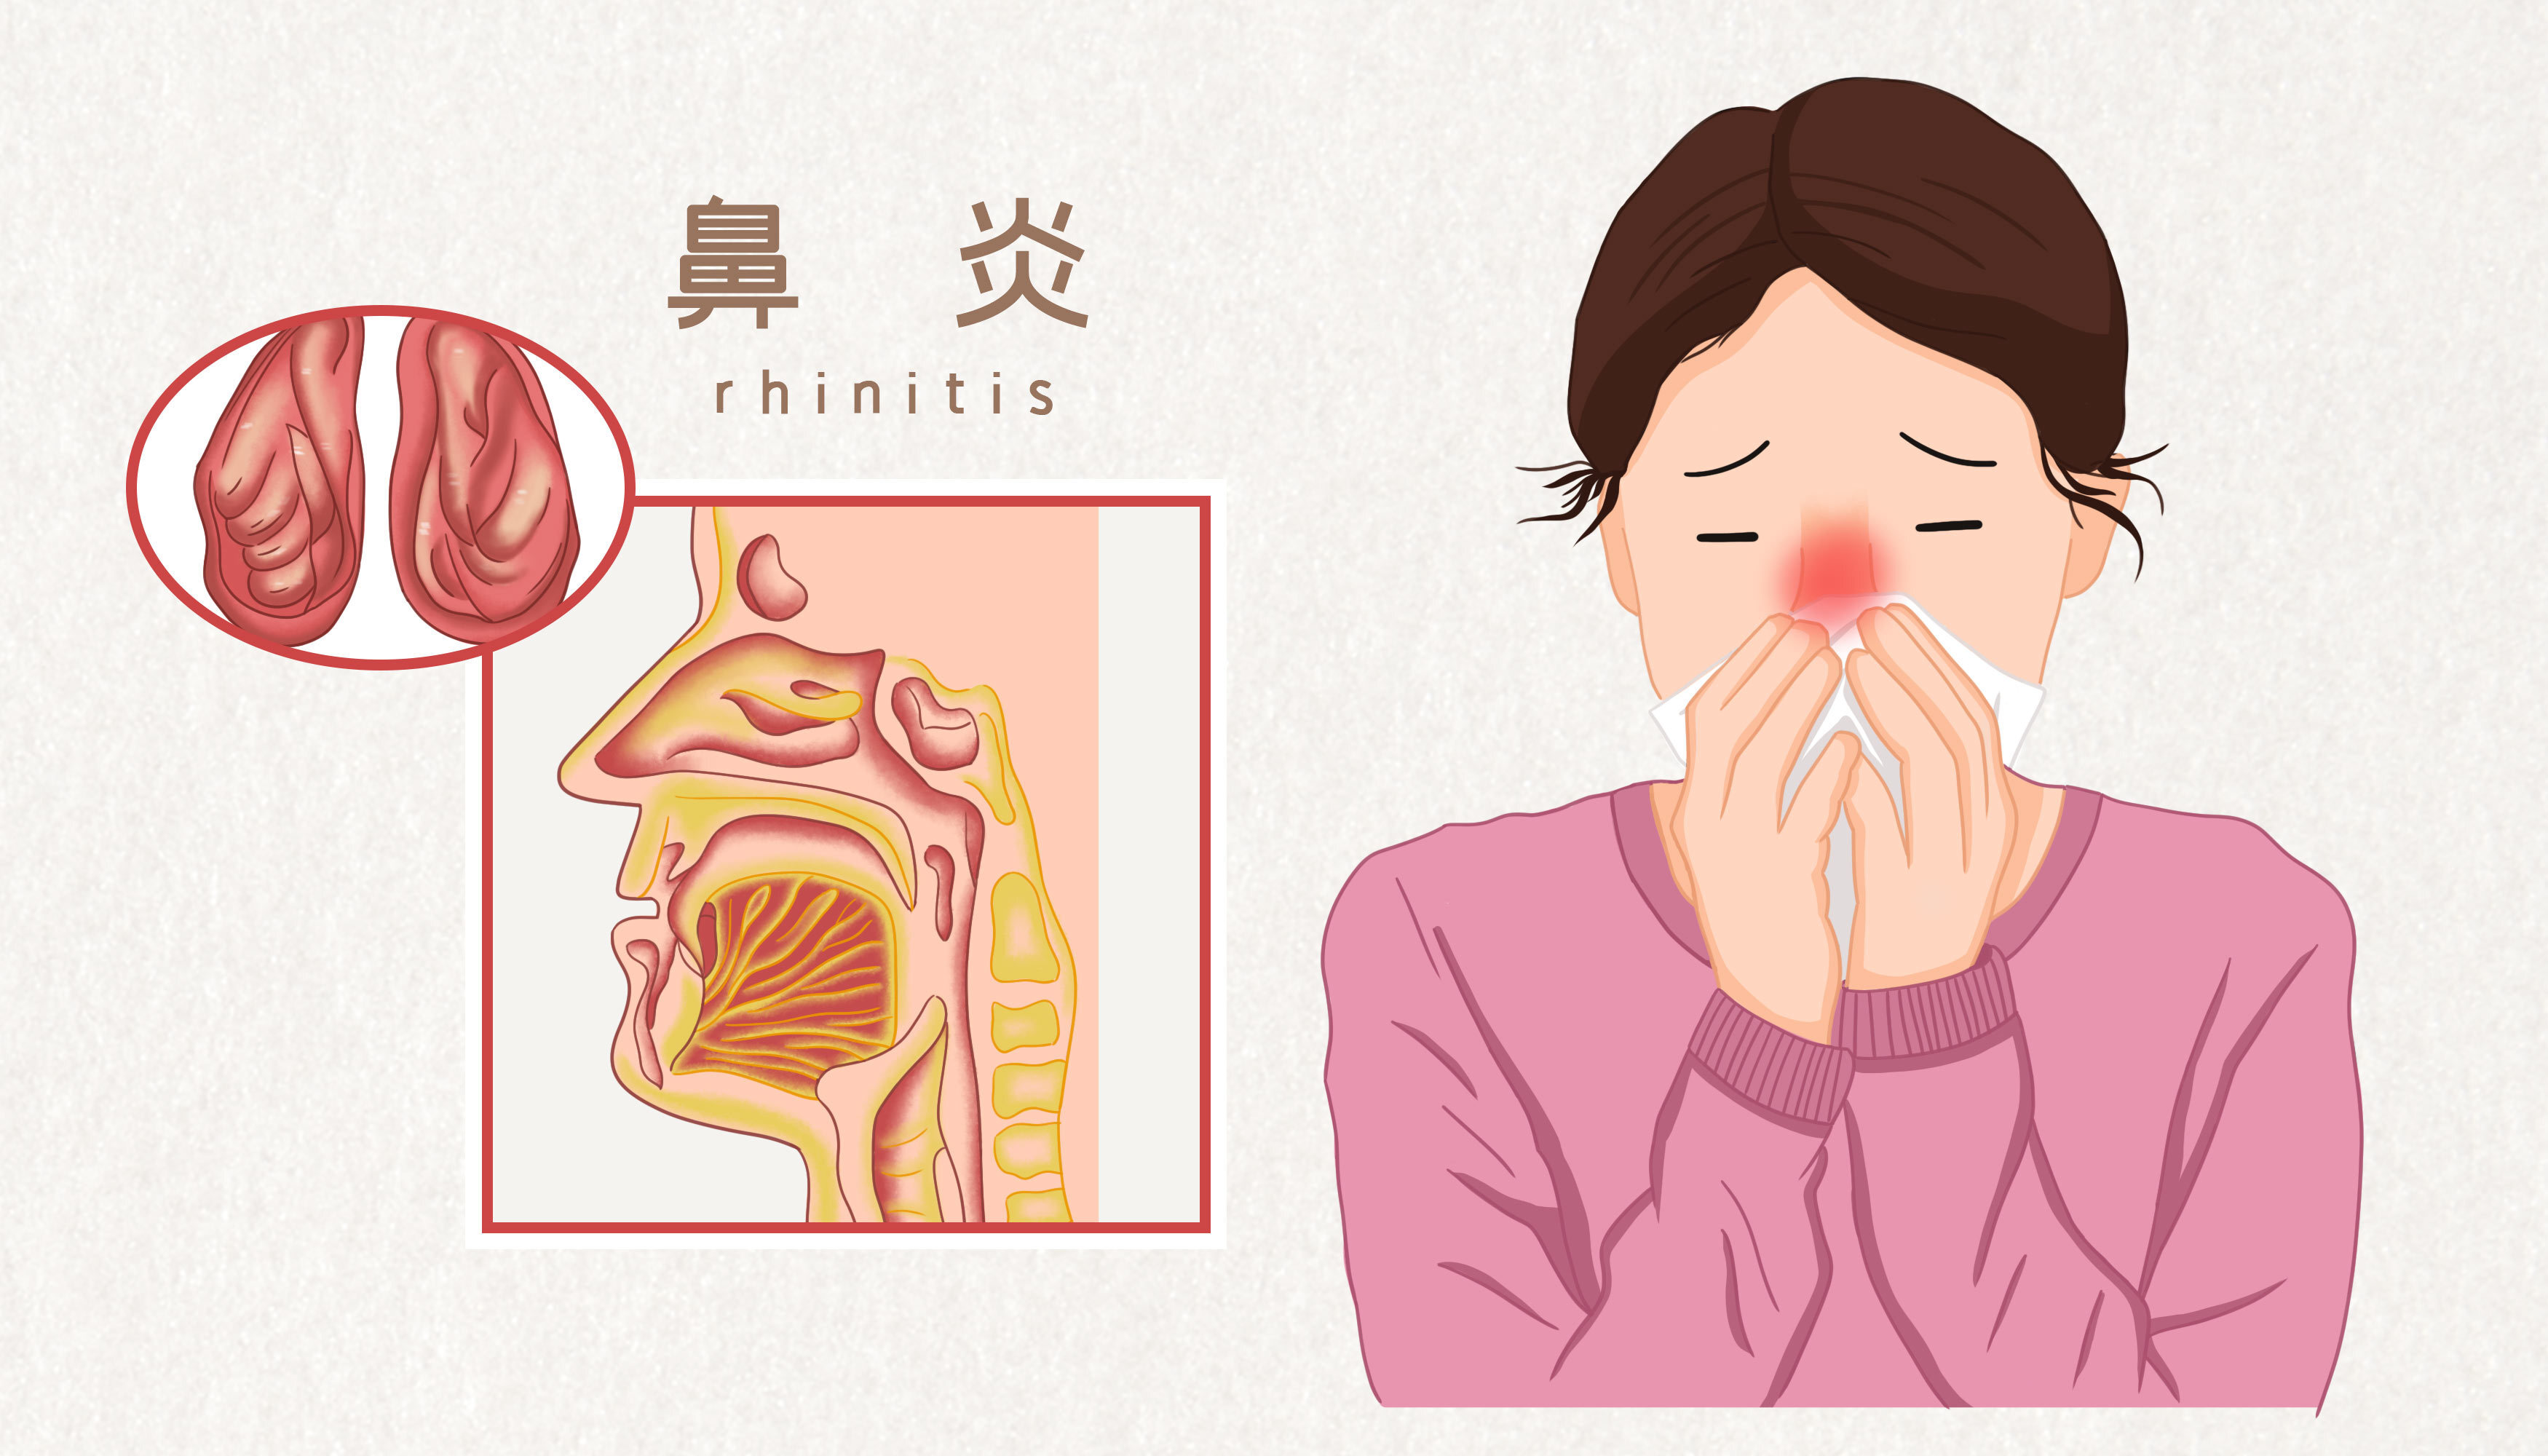 鼻窦炎患者可能表现的的不适症状有哪些?-京东健康